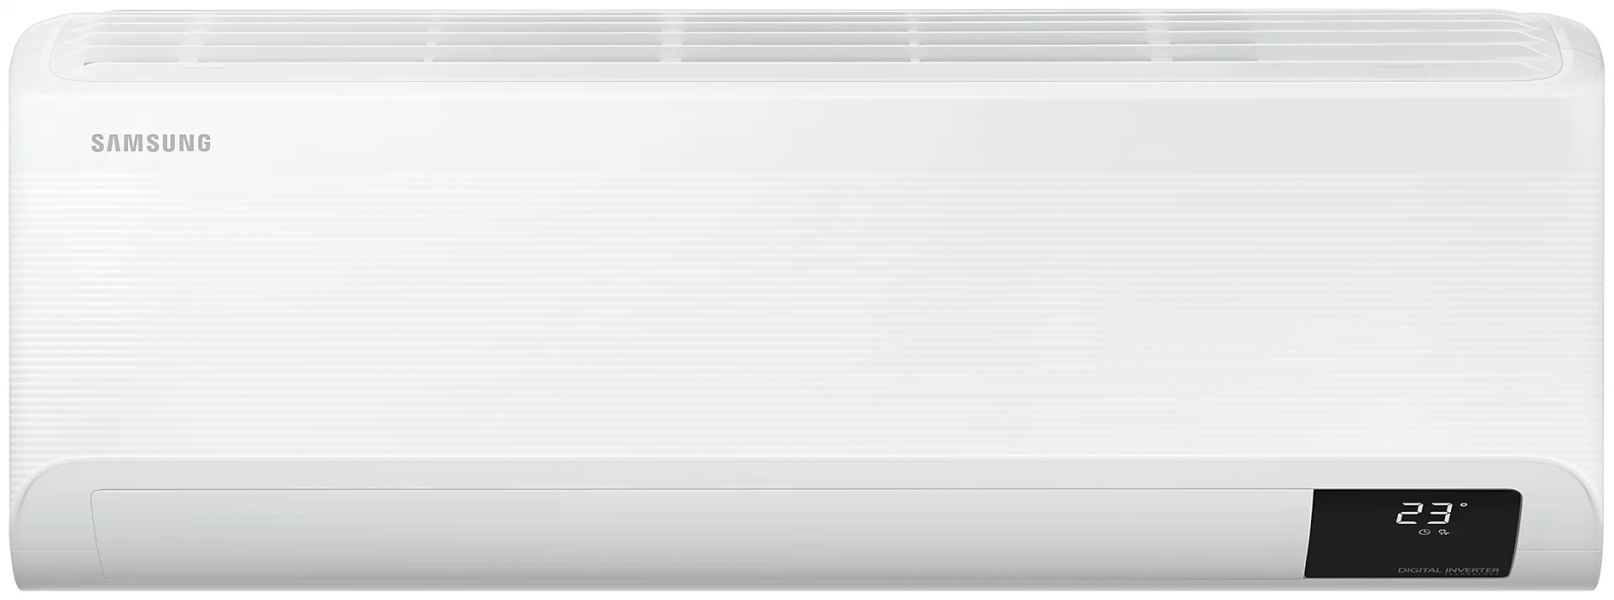 SAMSUNG Air conditioner AR18BSFCMWKNER